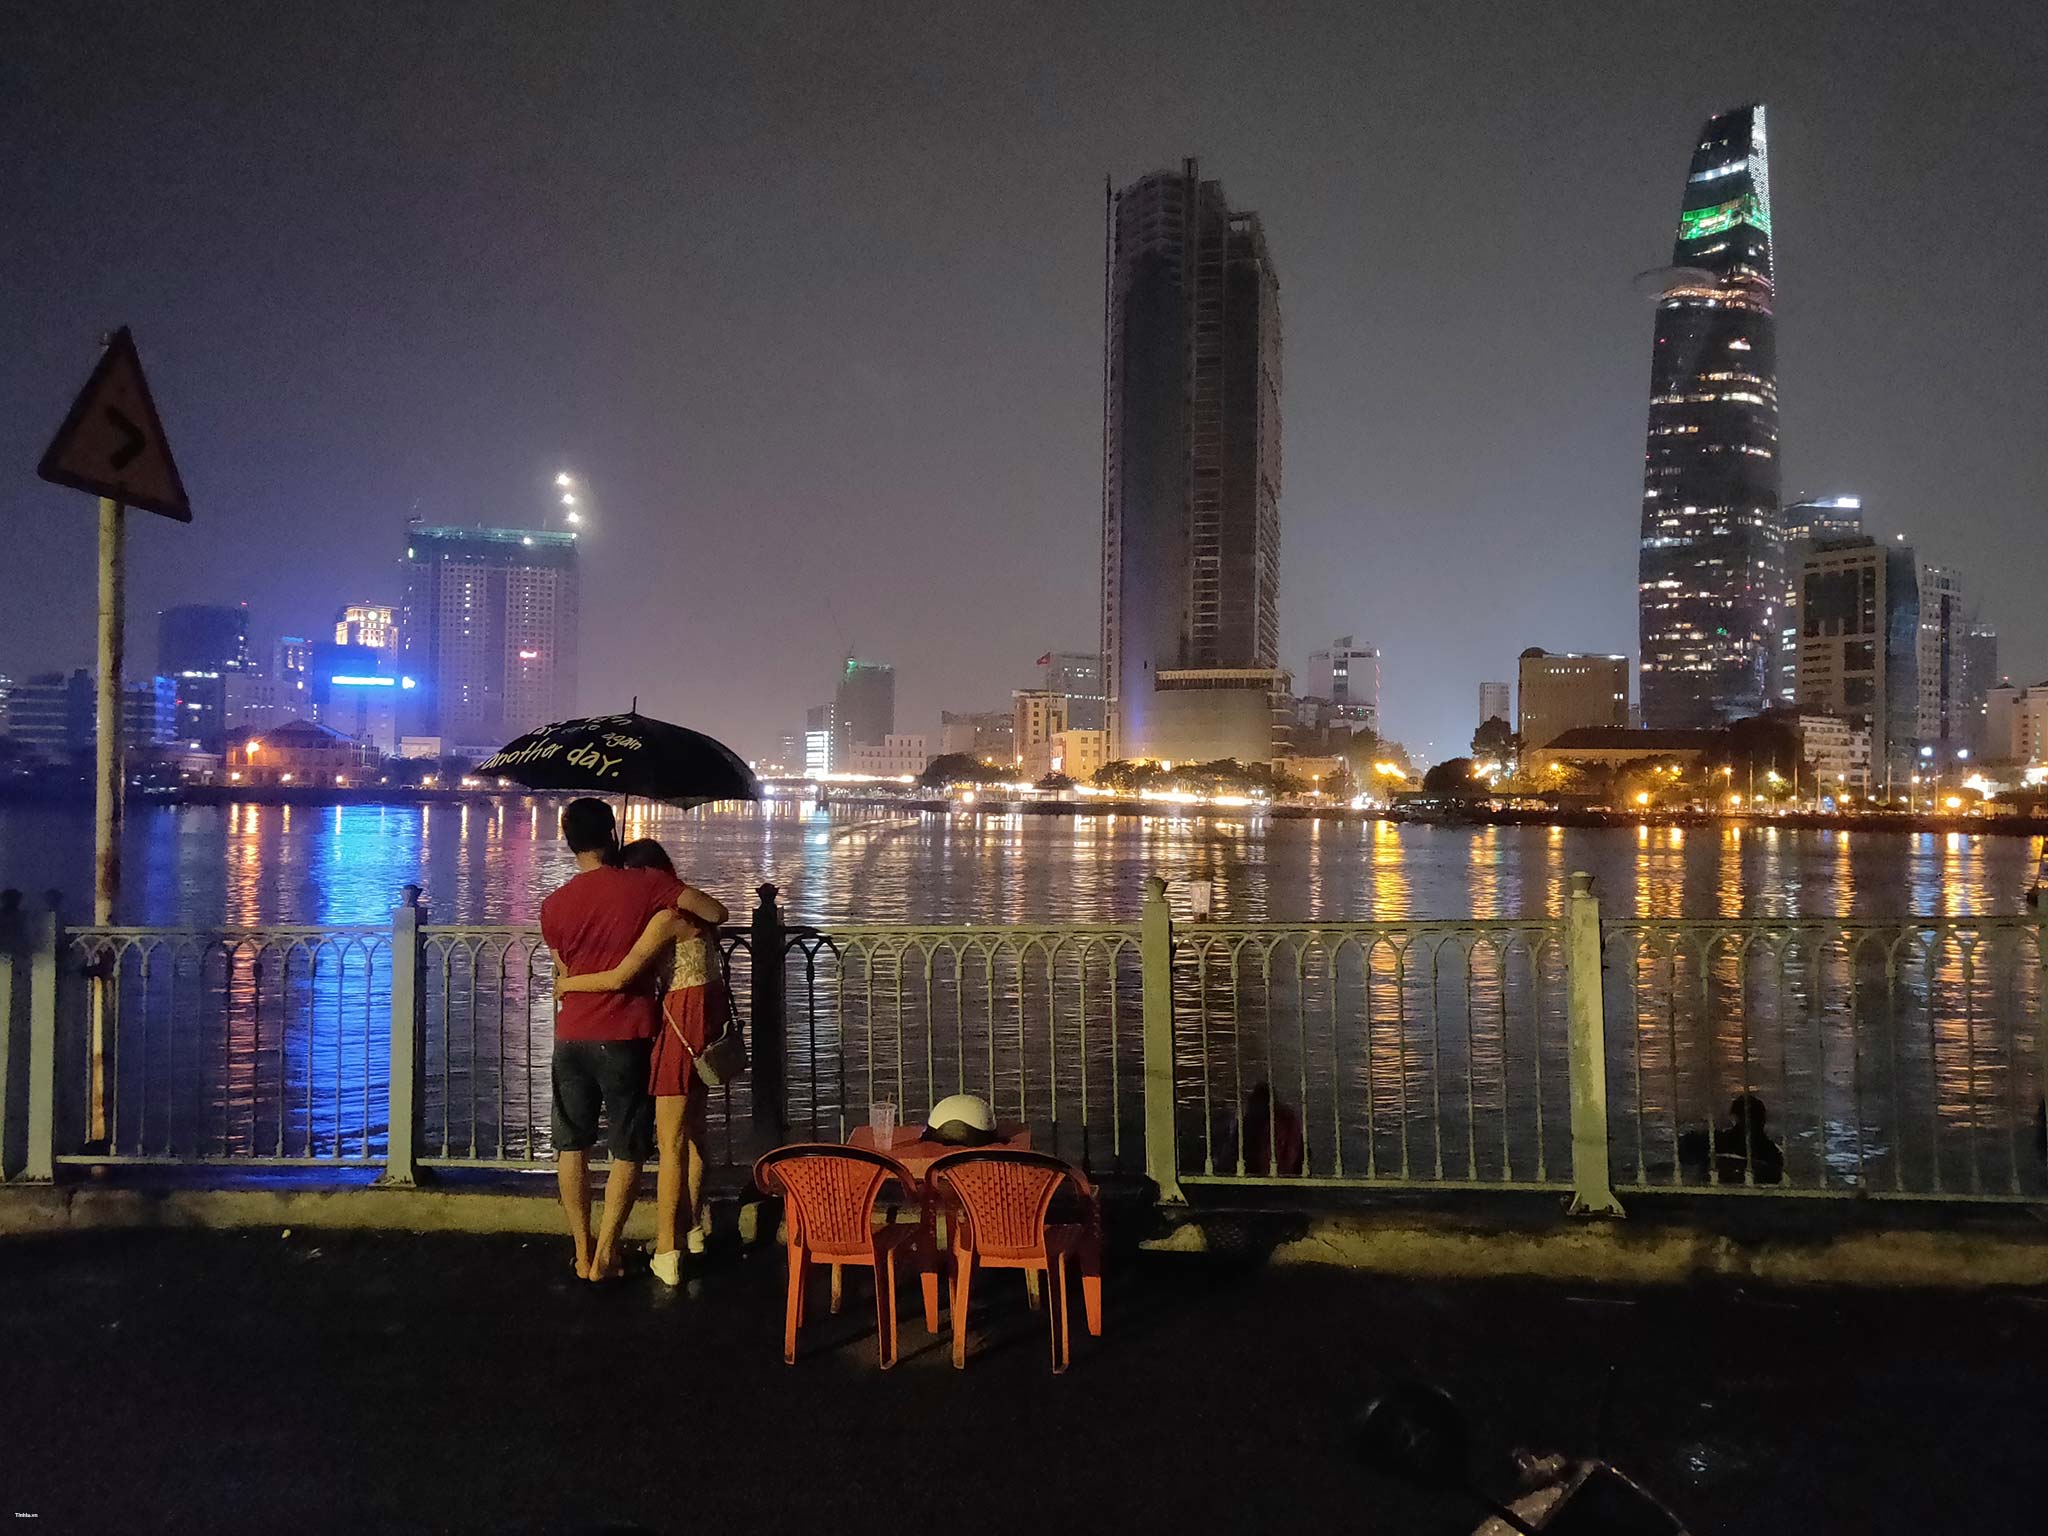 Cùng chiêm ngưỡng những khoảnh khắc lung linh của Sài Gòn về đêm qua ảnh Oppo FindX! Màu sắc chói chang, đường phố tấp nập, tất cả sẽ đưa bạn đến một thế giới hoàn toàn khác. Hãy đón xem và cảm nhận sự sống động của thành phố này.